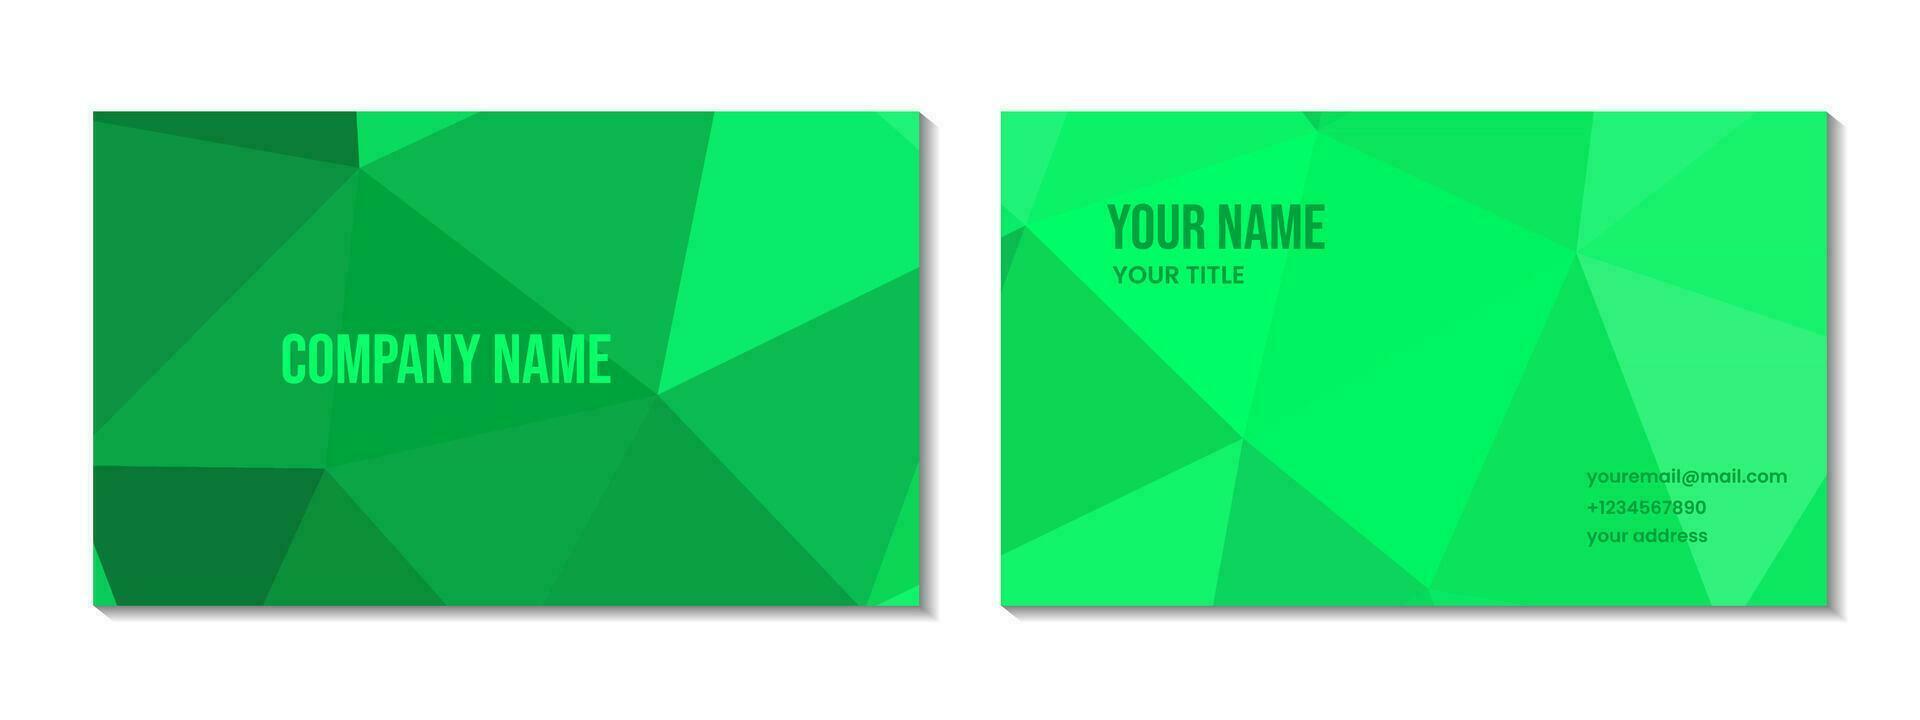 företag kort design abstrakt trianglar grön bakgrund. vektor illustration.